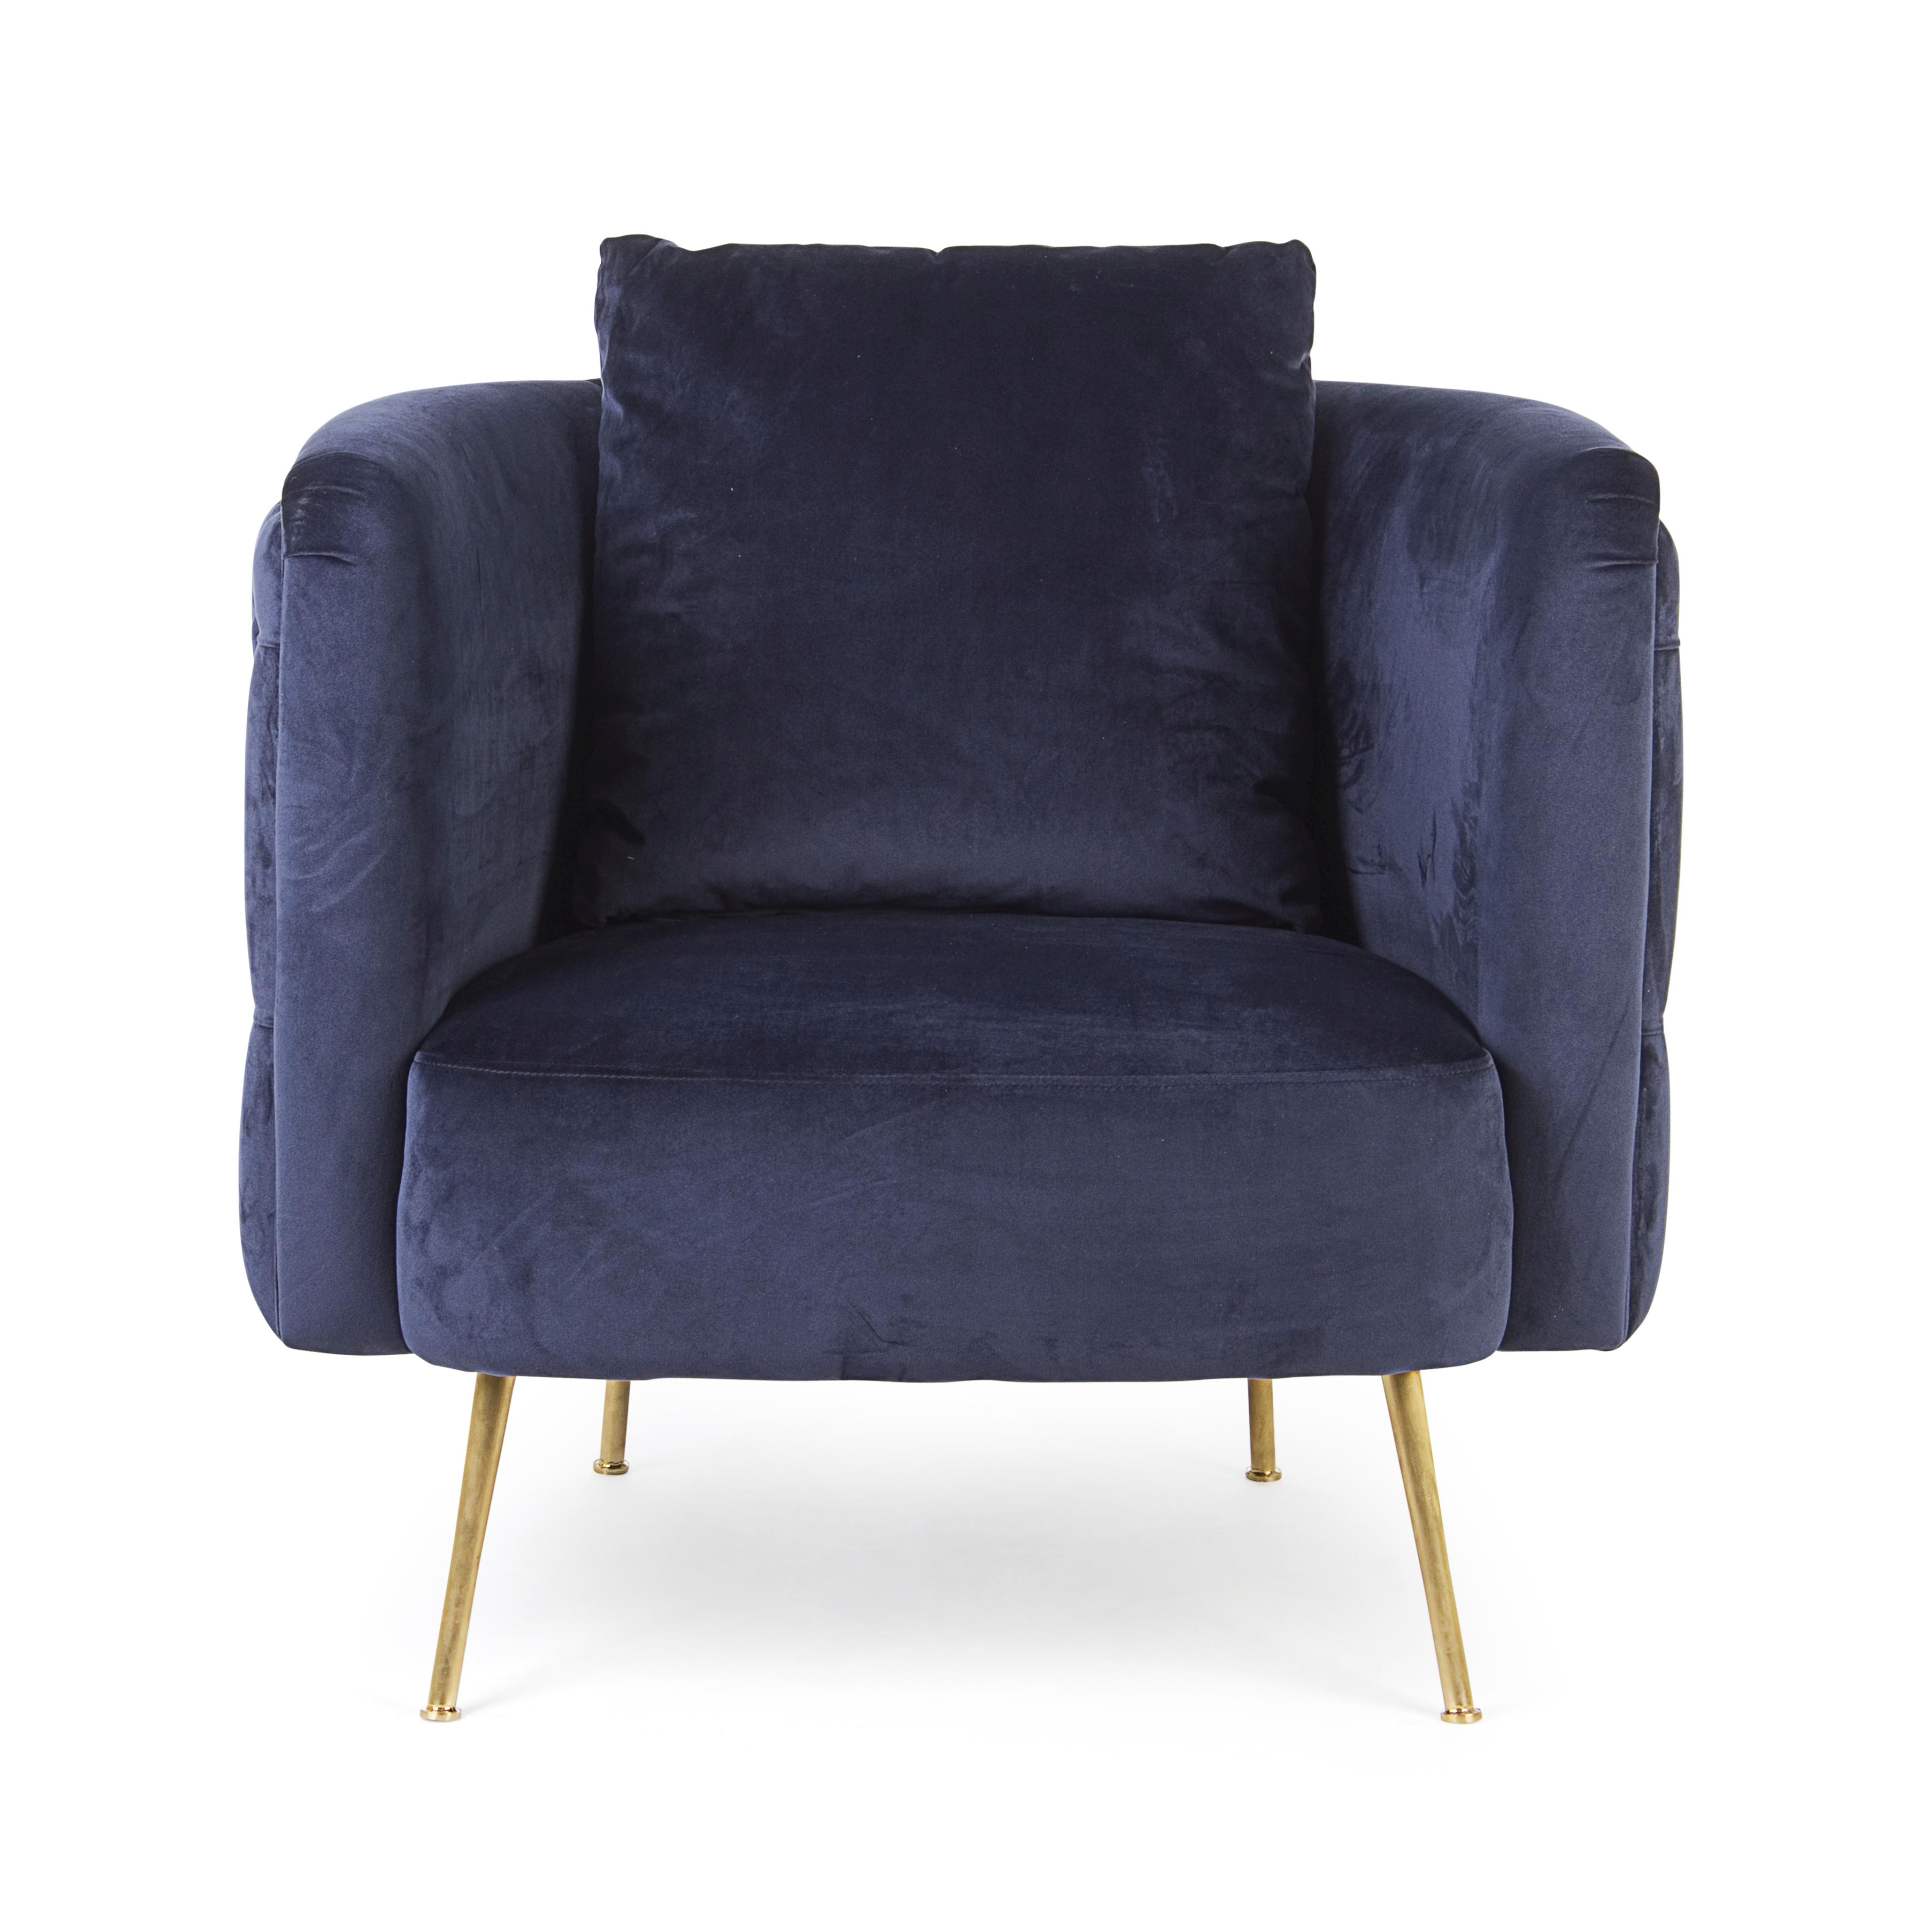 Der Sessel Tenbury überzeugt mit seinem modernen Design. Gefertigt wurde er aus Stoff in Samt-Optik, welcher einen blauen Farbton besitzt. Das Gestell ist aus Metall und hat eine goldene Farbe. Der Sessel besitzt eine Sitzhöhe von 42 cm. Die Breite beträg